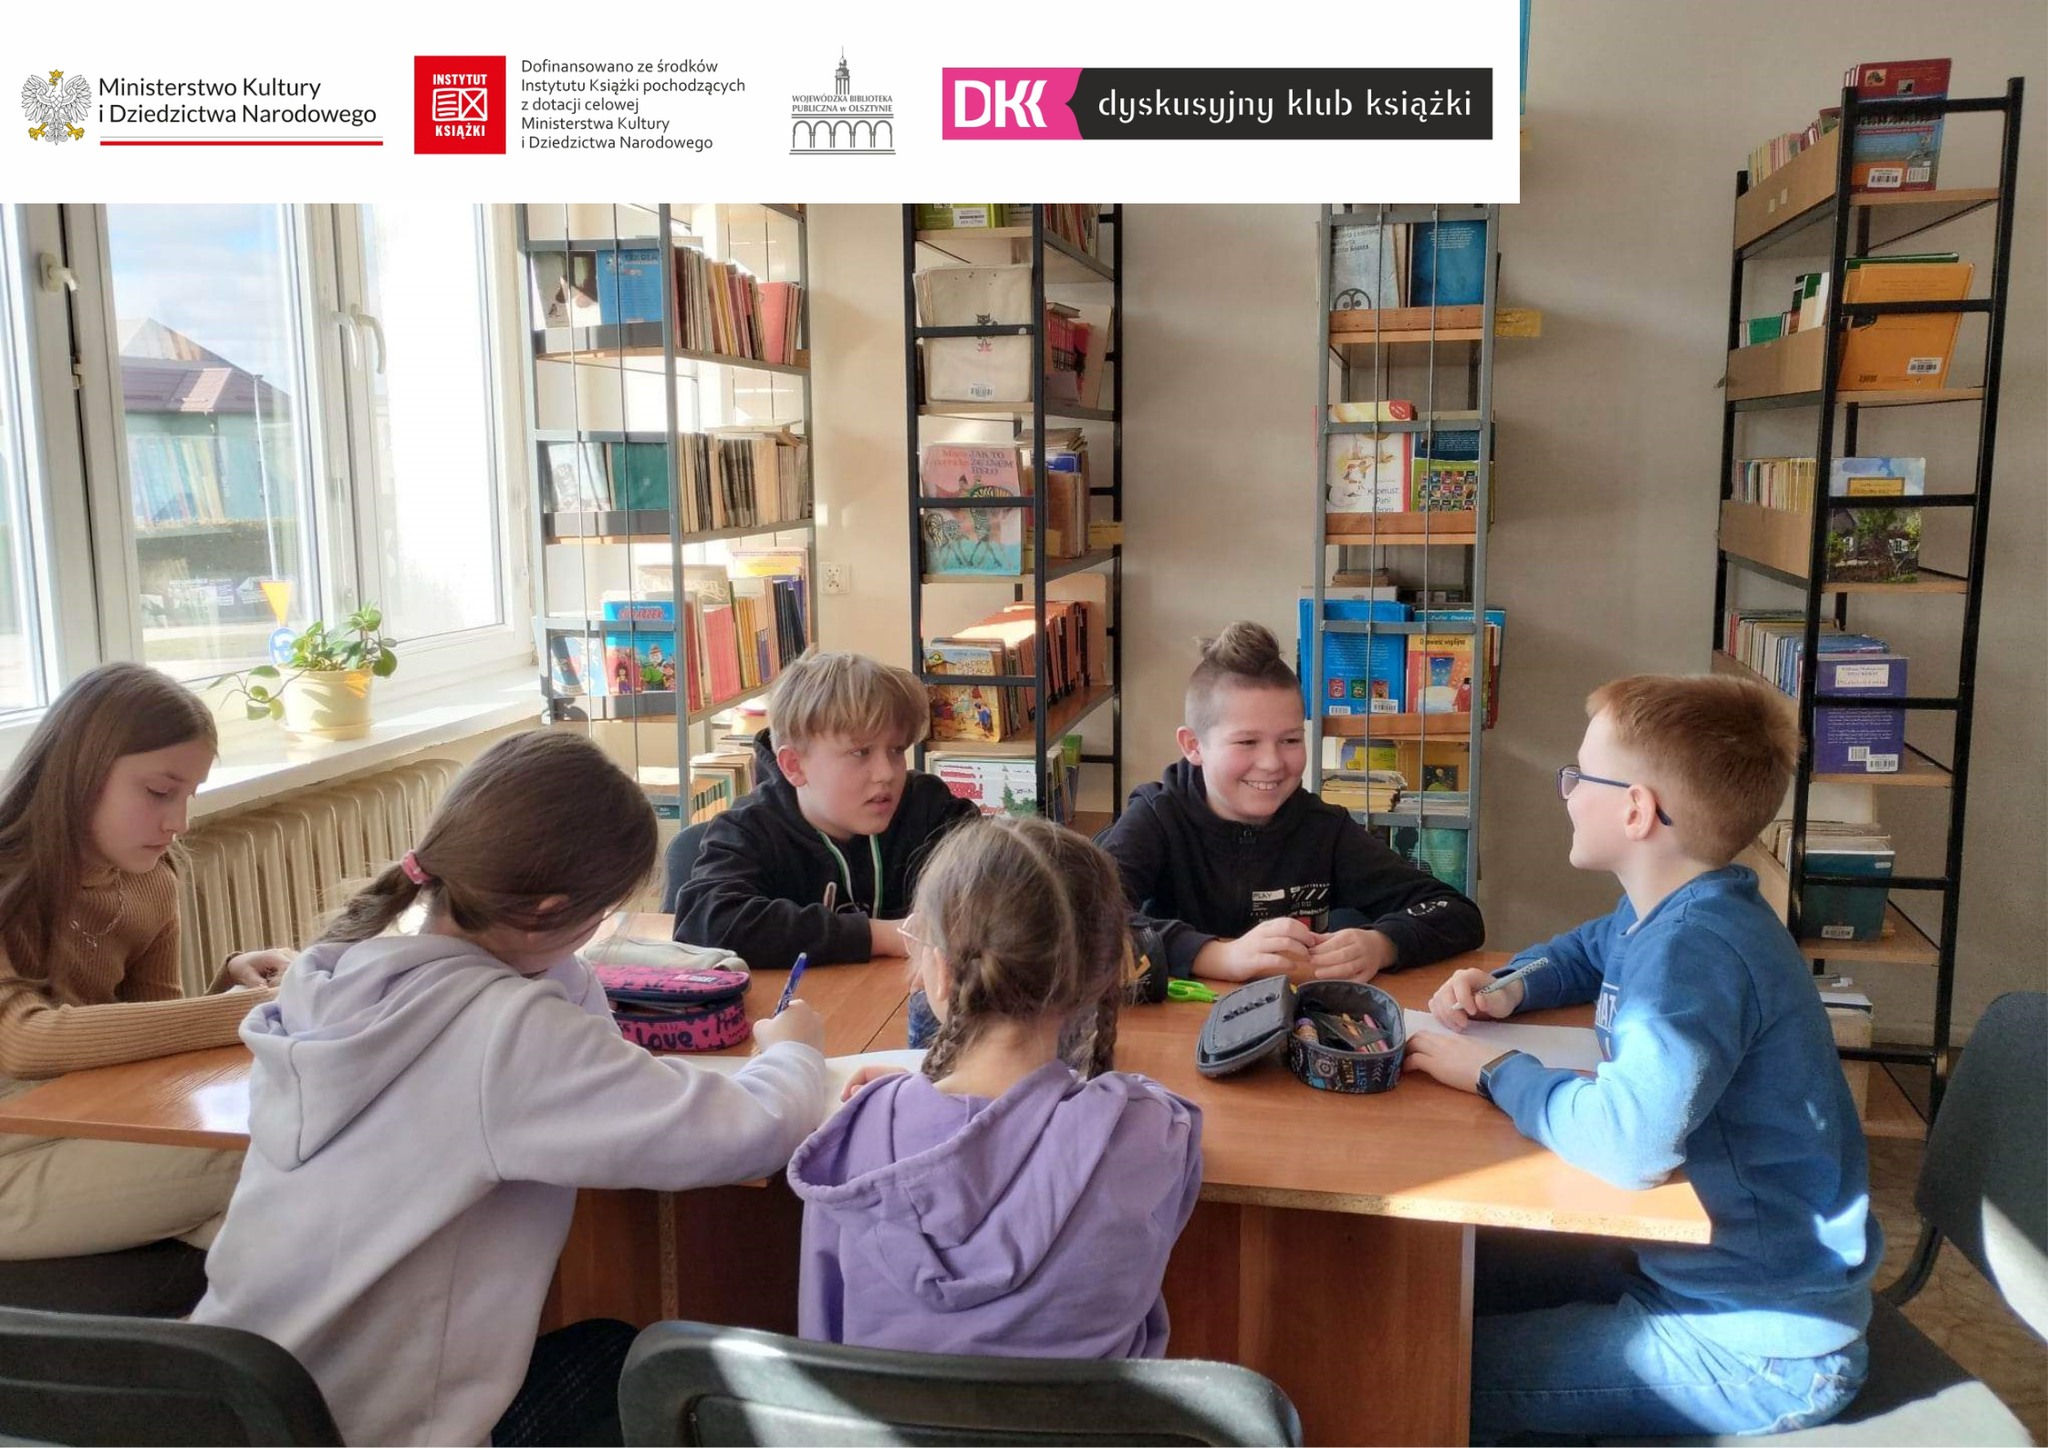 uczniowie z klubu DKK SP4 piszą opracowanie z omawianej książki